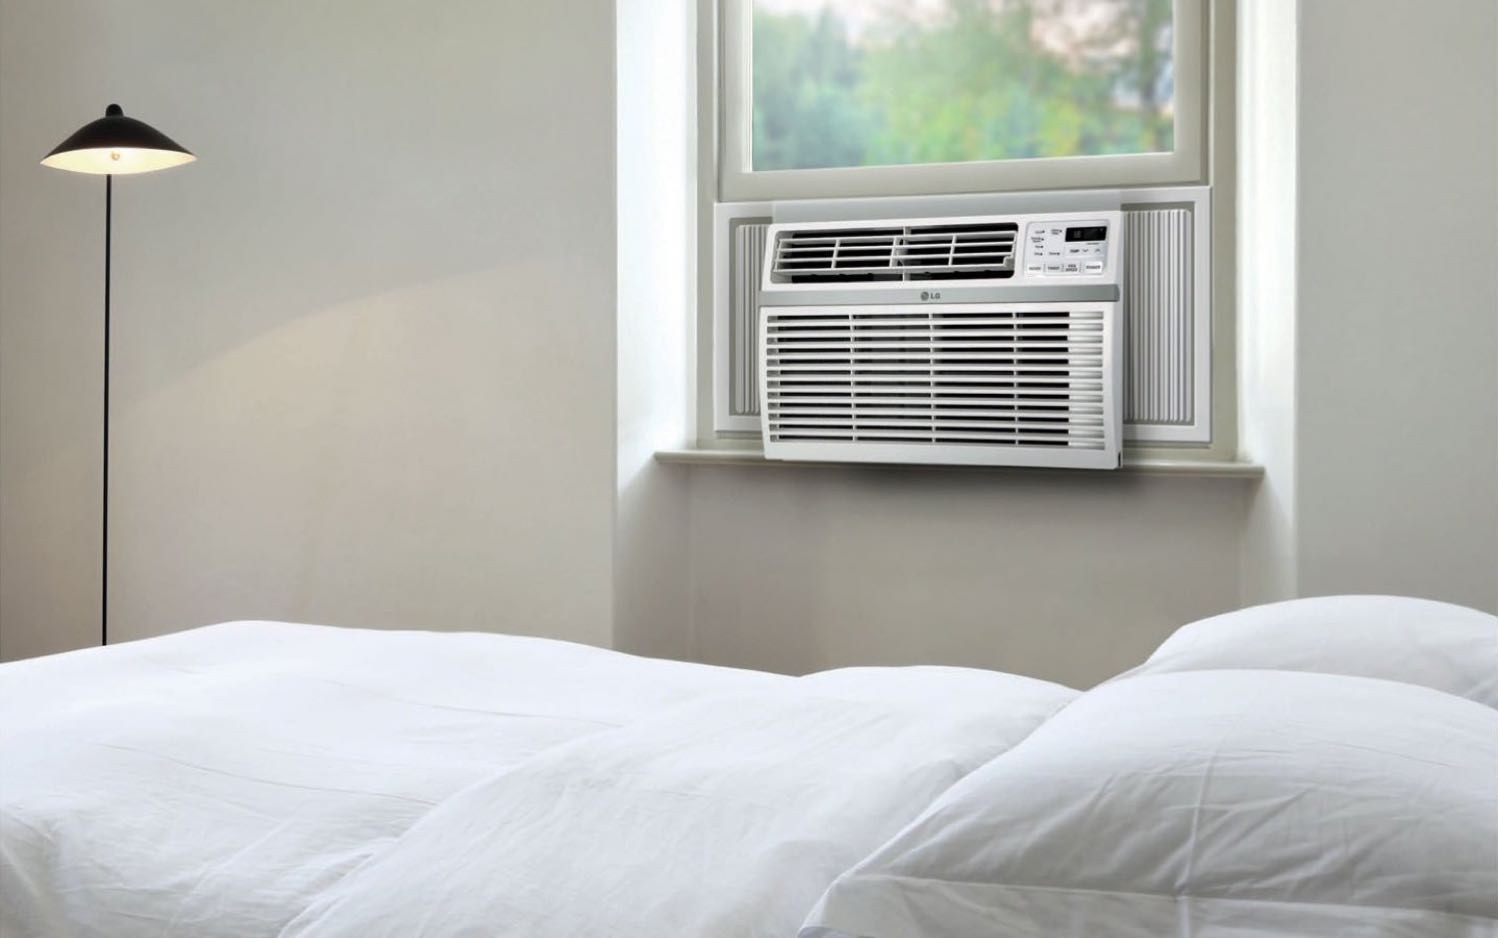 LG 7500 BTU Window Air Conditioner/Heater